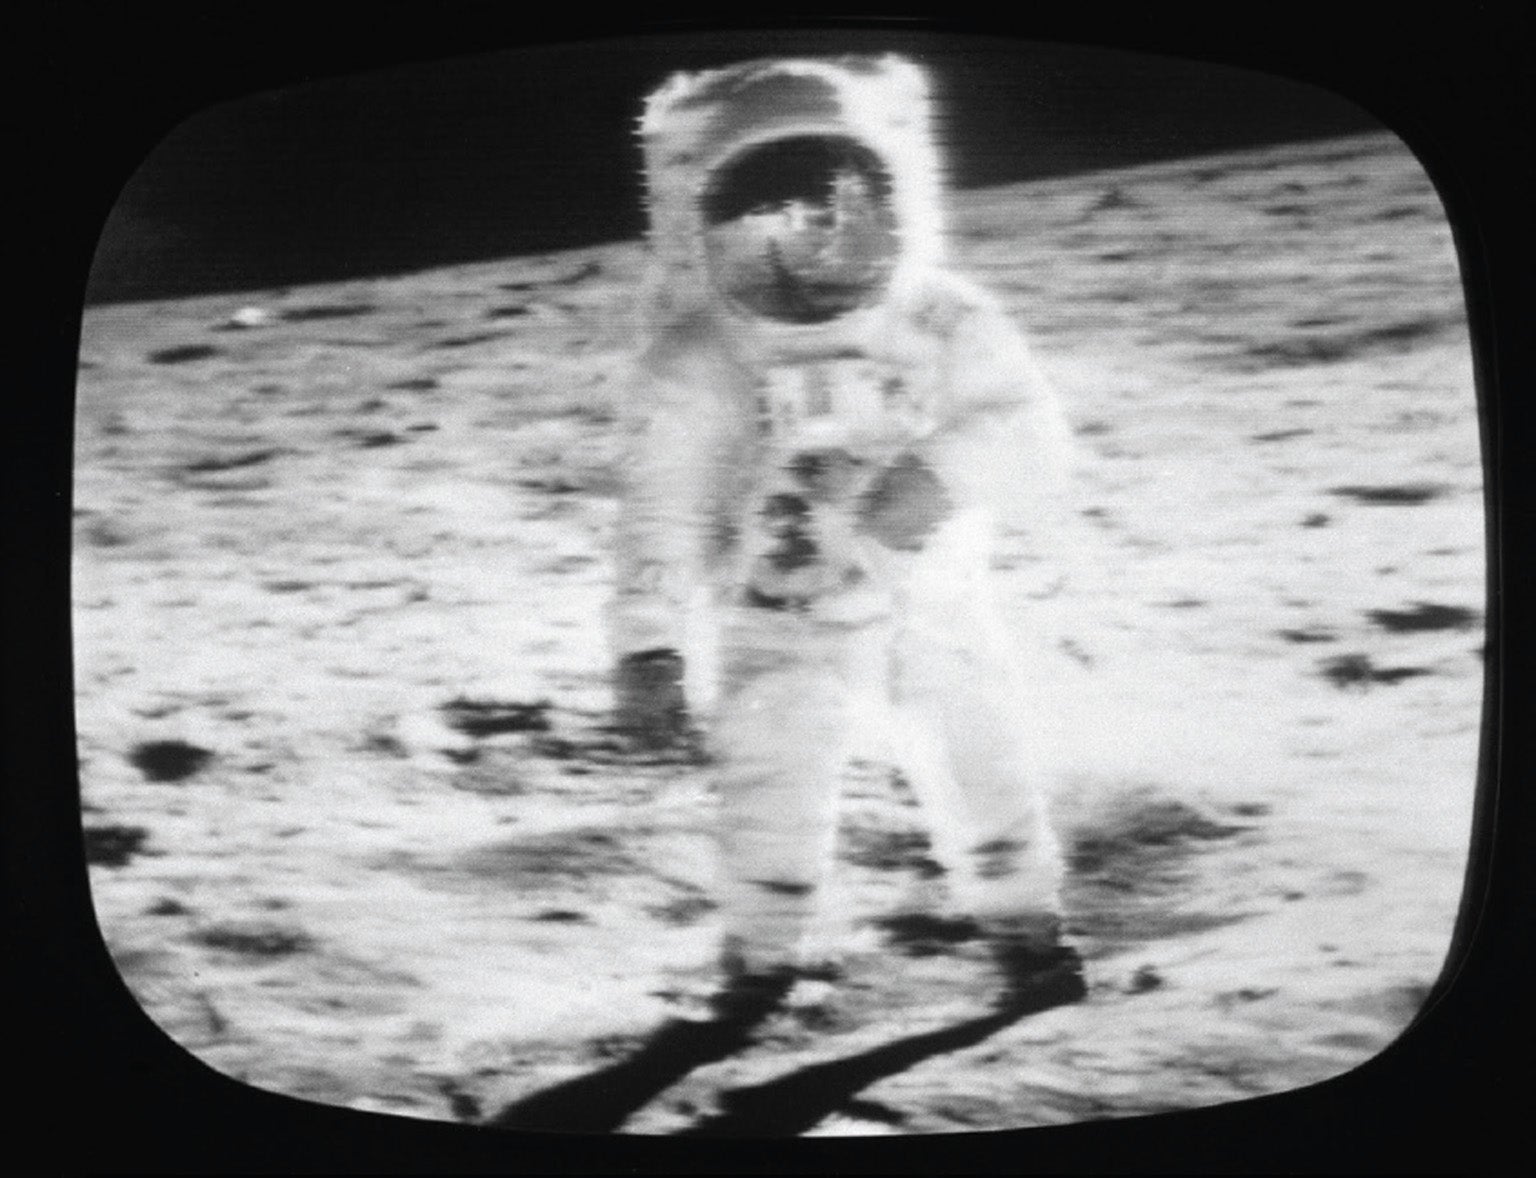 Человек который впервые оказался на поверхности луны. Человек на Луне фото 1969.